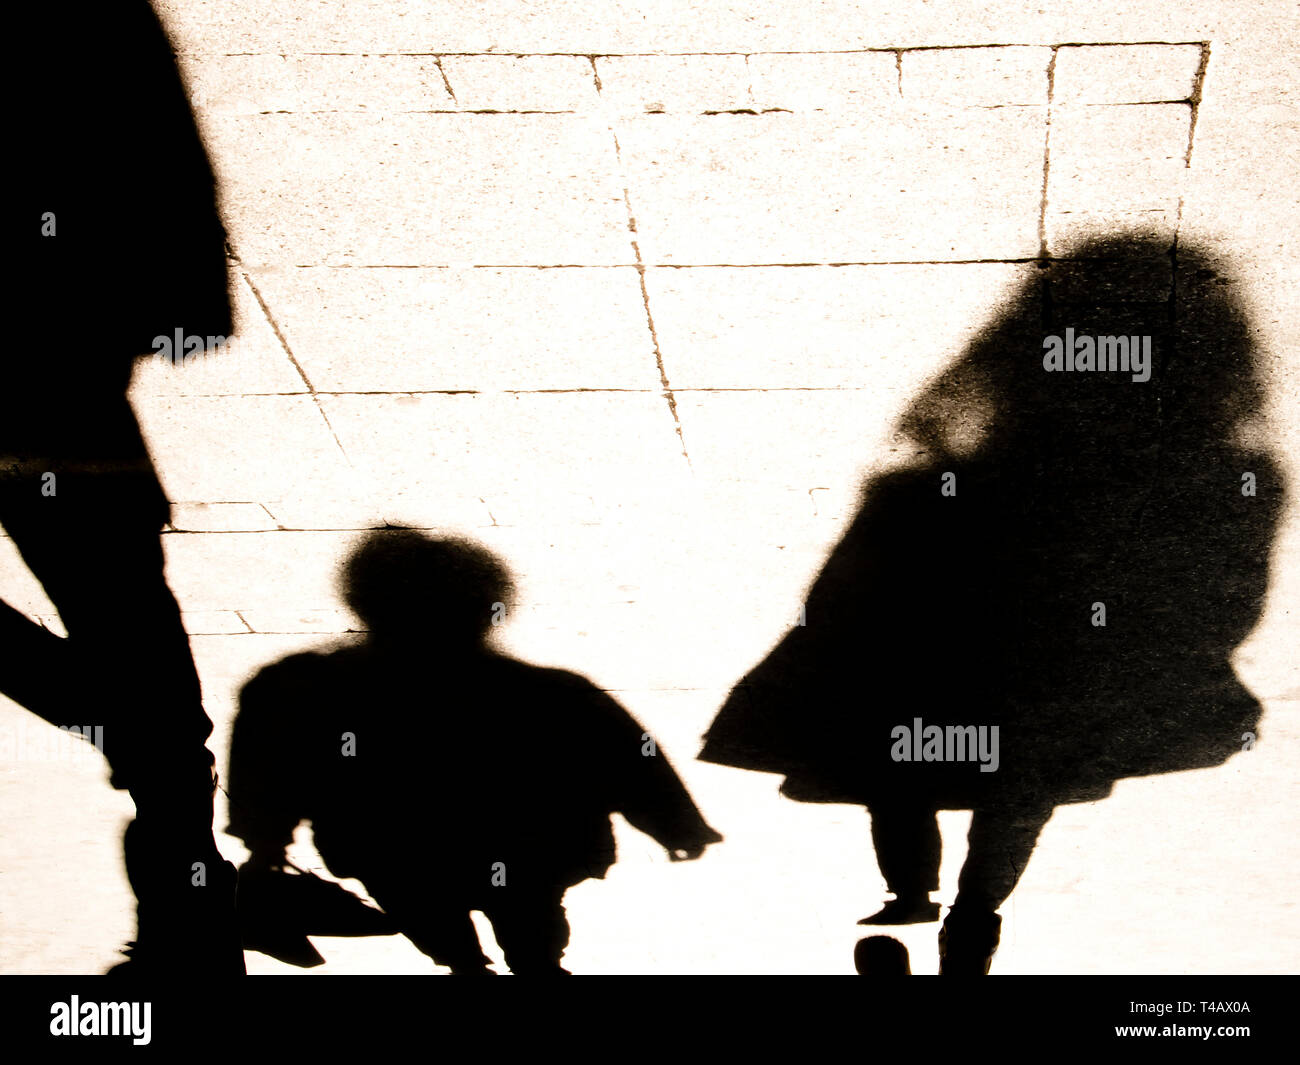 Silhouete blurrry Schatten von Menschen zu Fuß in hoher Kontrast sepia schwarz und weiß Stockfoto